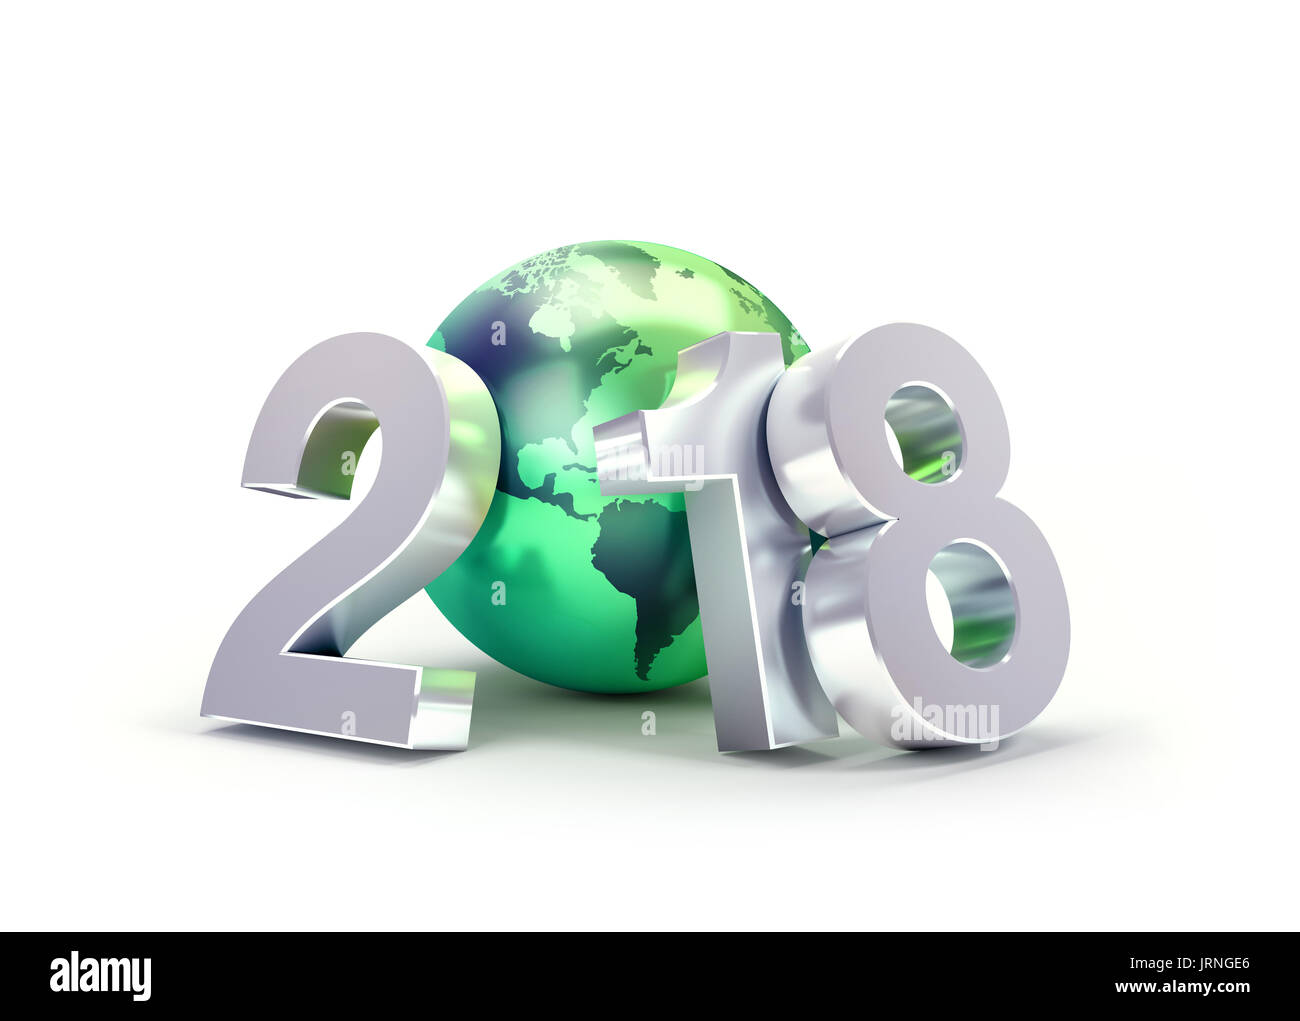 2018 Nouvelle année type composé d'un green planet earth, isolé sur blanc - 3D illustration Banque D'Images